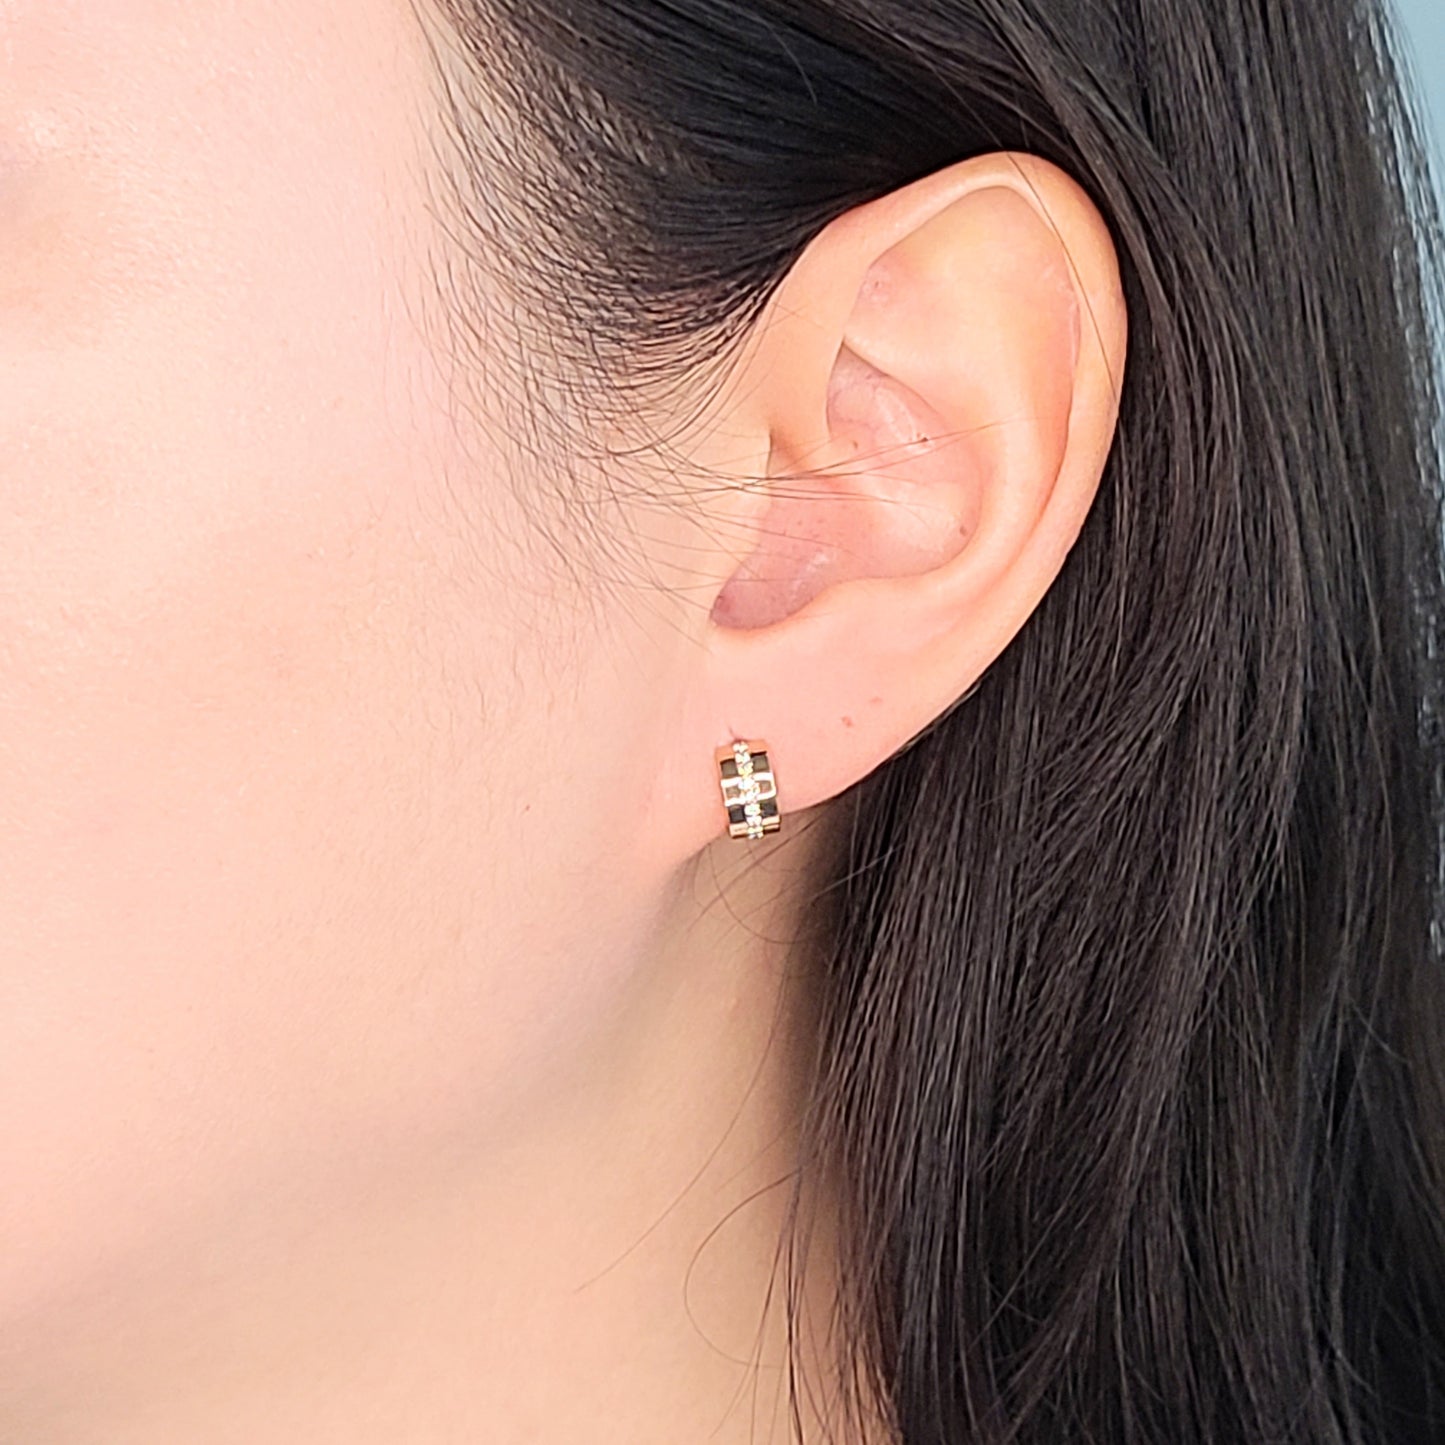 Diameter 9.5mm Diamond Earrings/ 4.5mmWidth Hoop Earrings/Diamond Huggies / 14k Gold Diamond Huggie Hoops/ Cartilage Hoop/Anniversary Gift